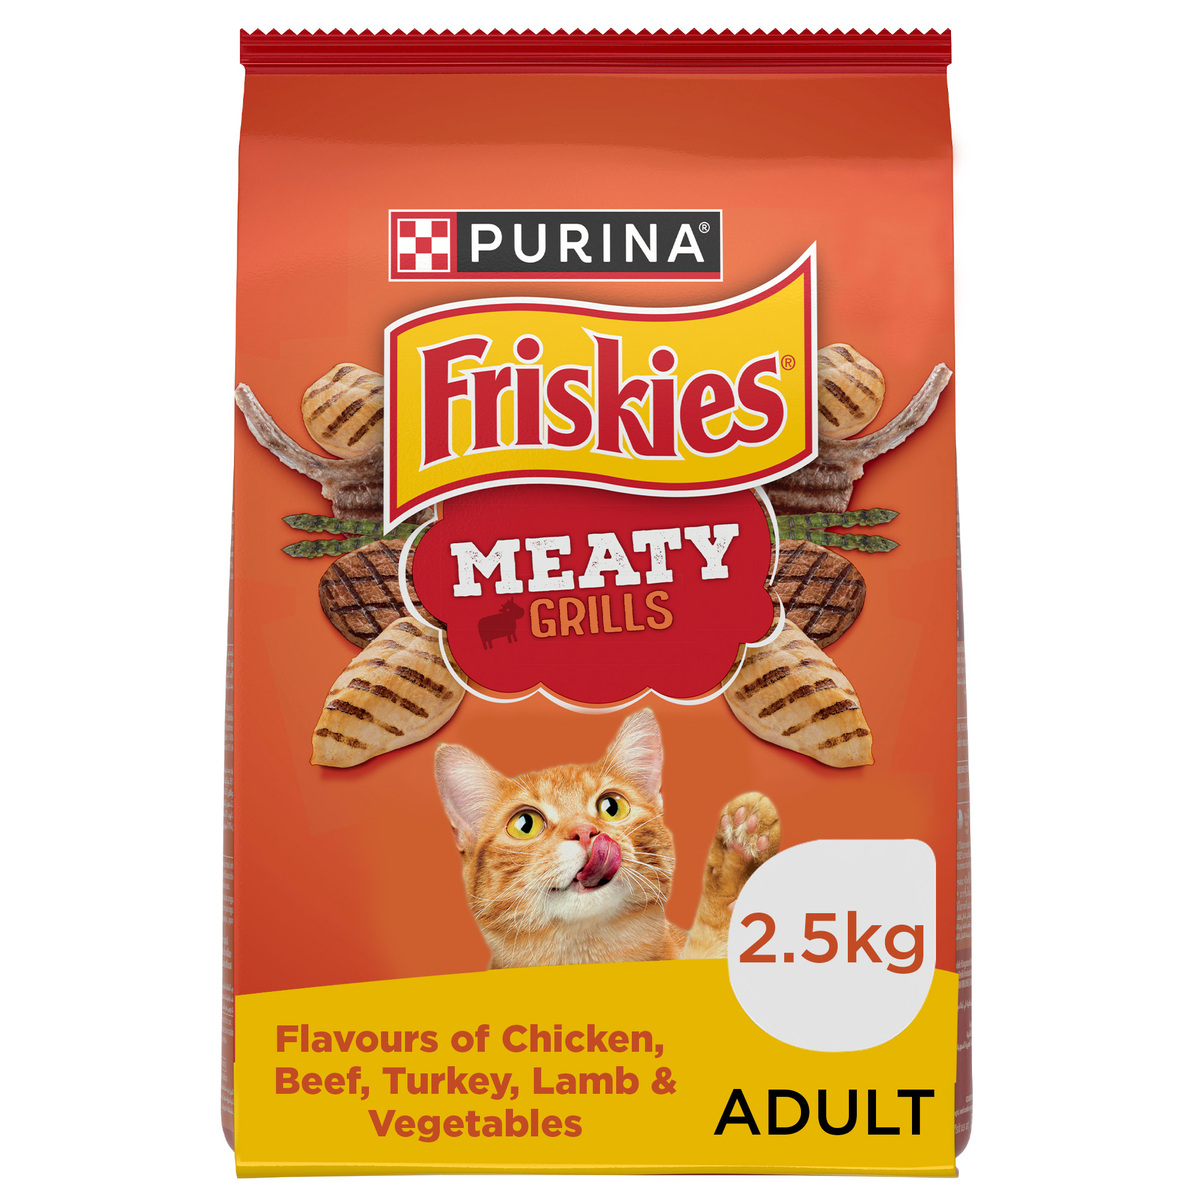 بورينا فريسكيز ميتي جريل طعام القطط بنكهة الشواء 2.5 كجم